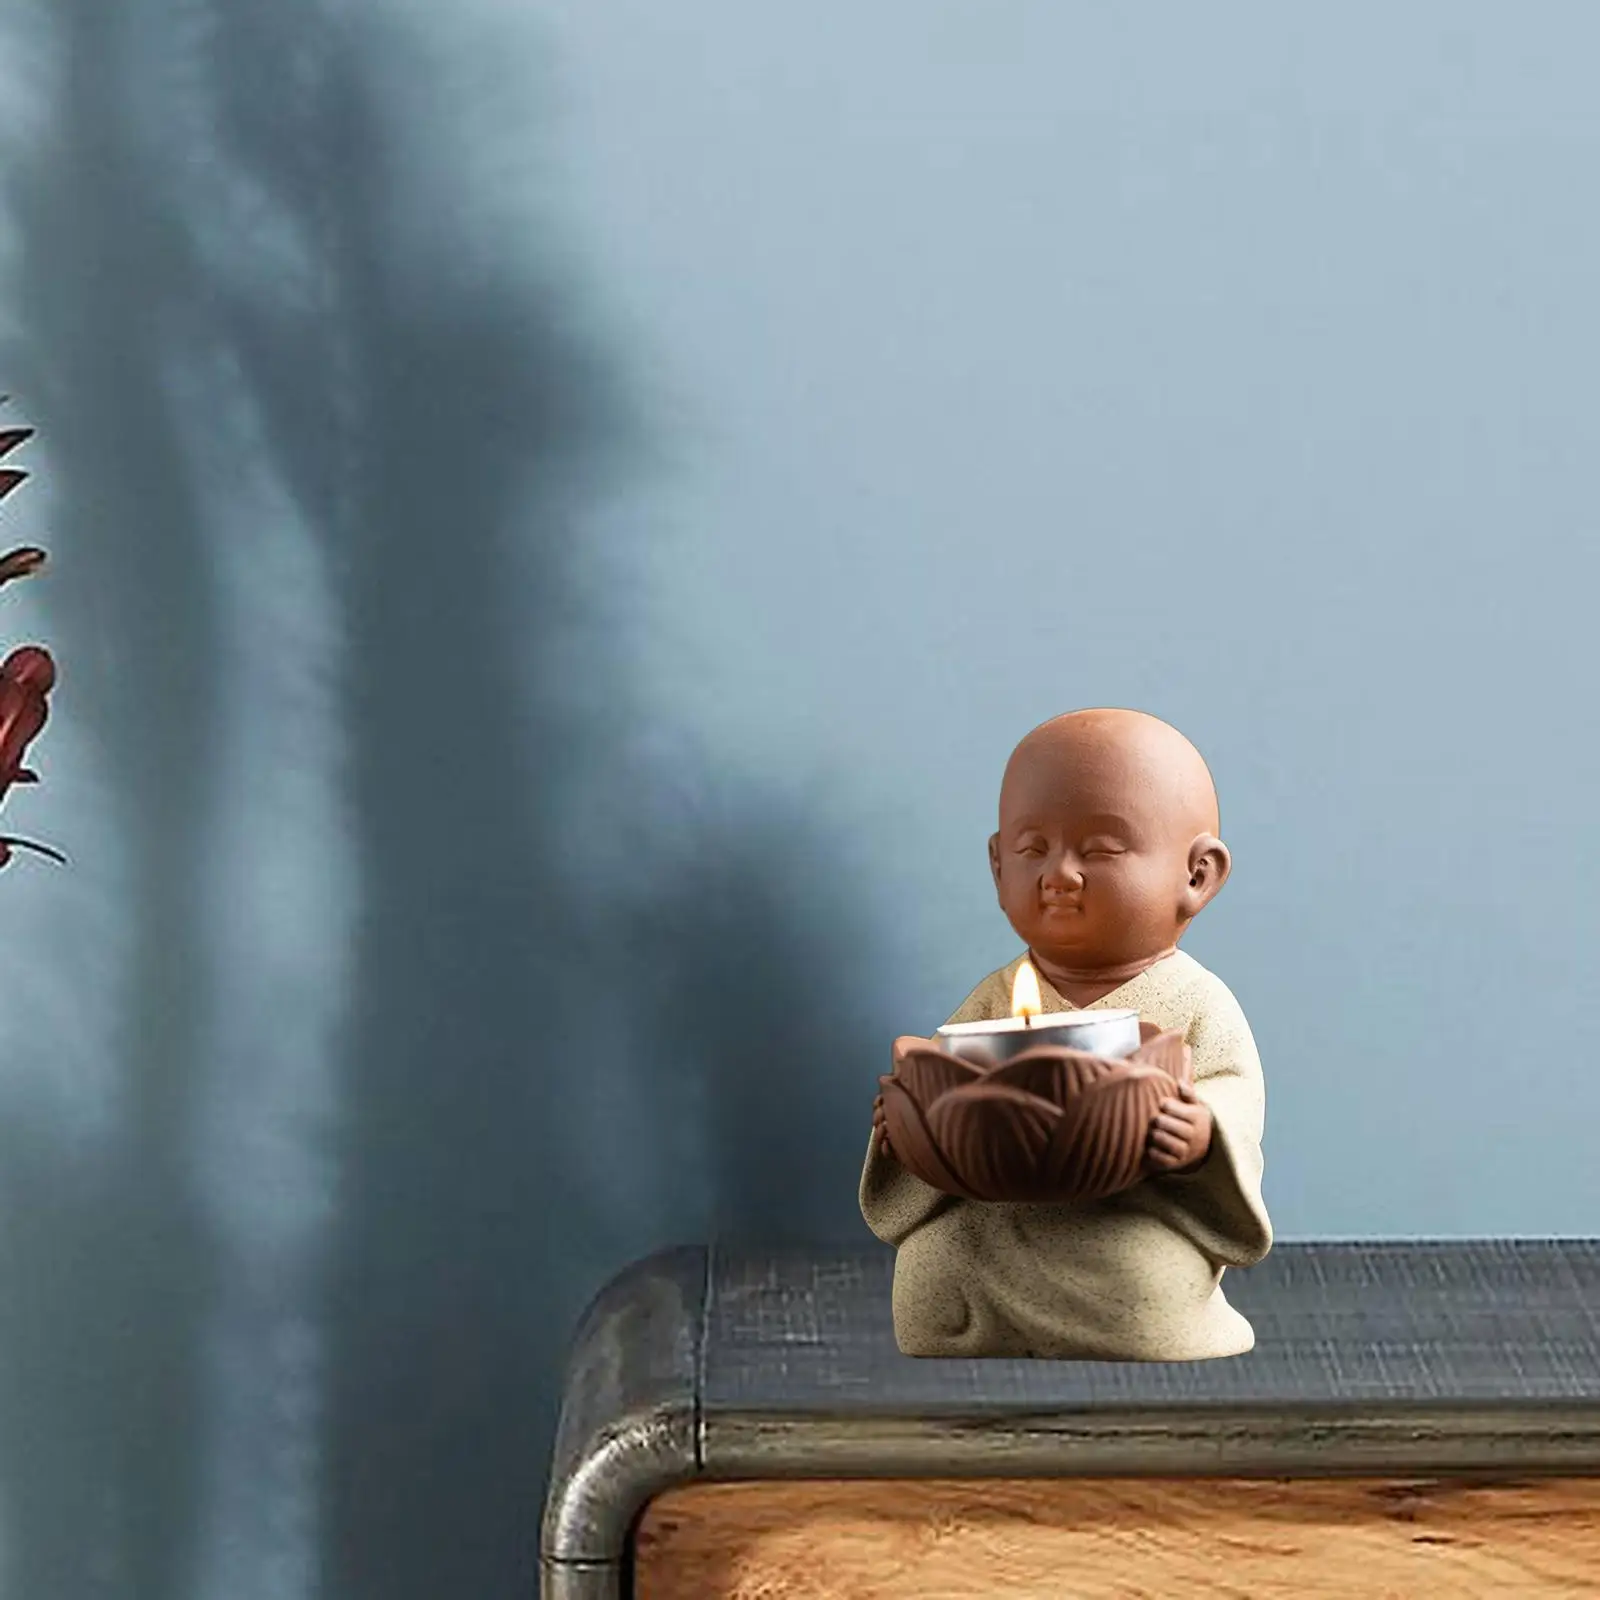 Ceramic Little Monk Statue Tealight Candle Holder Zen Yoga Decoration Votive Candle Holder for Bedroom, Living Room Adorable